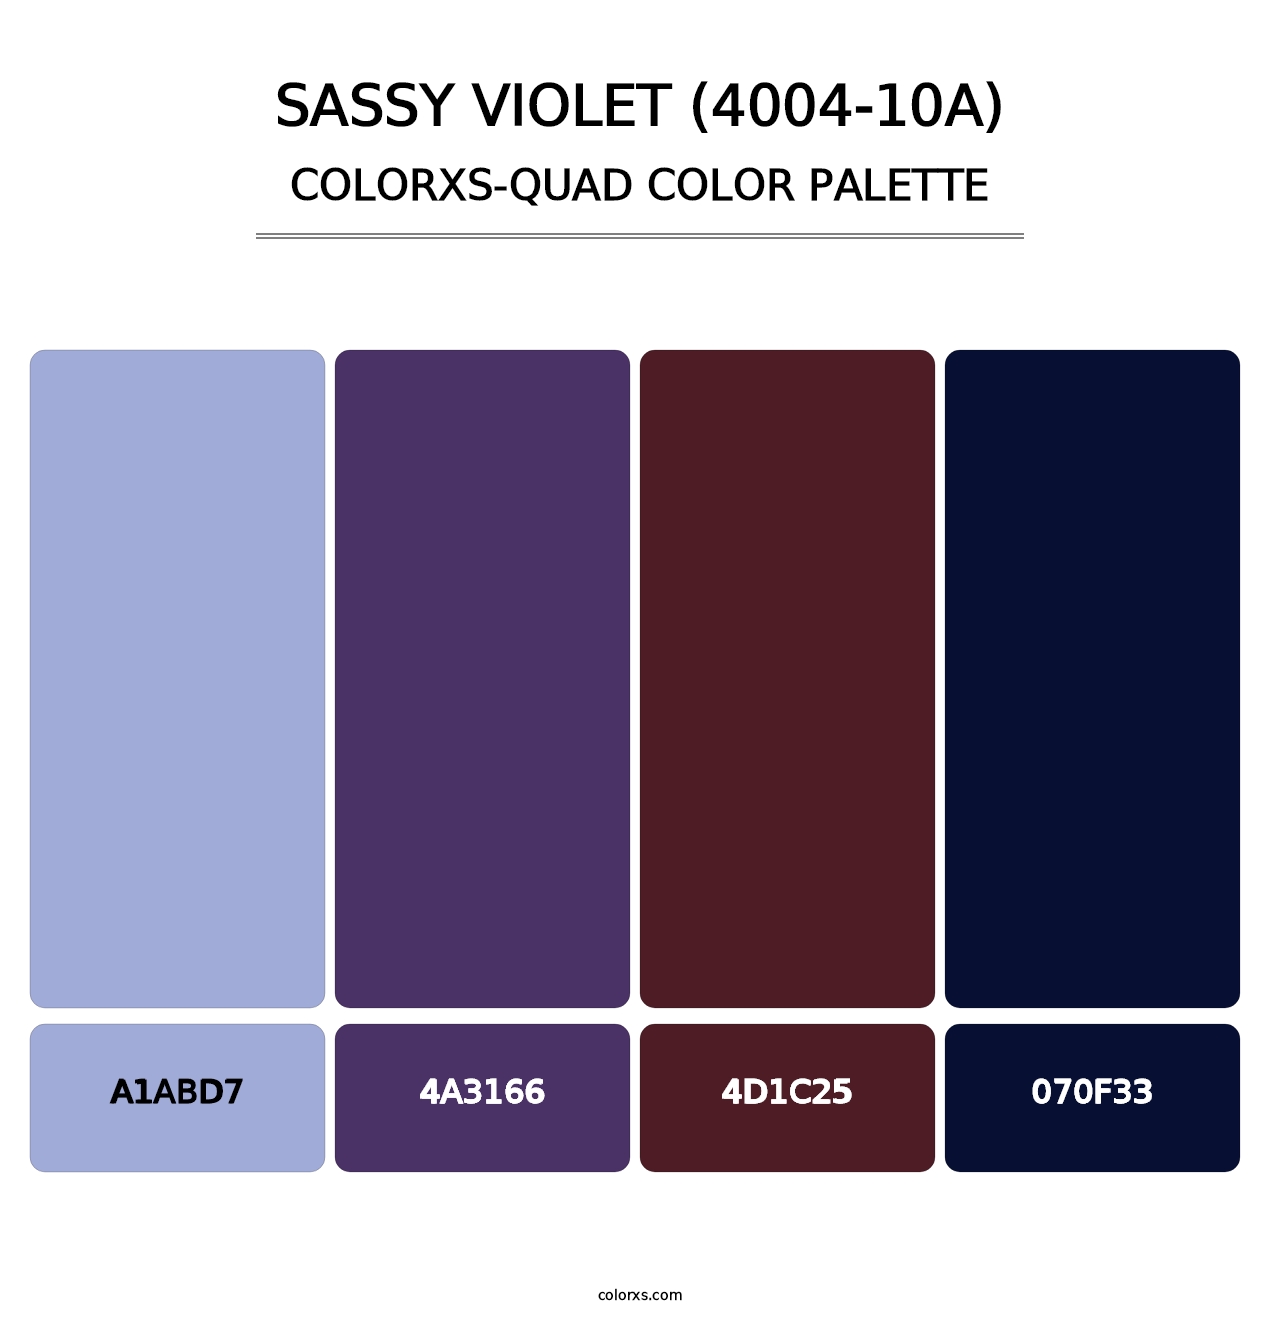 Sassy Violet (4004-10A) - Colorxs Quad Palette